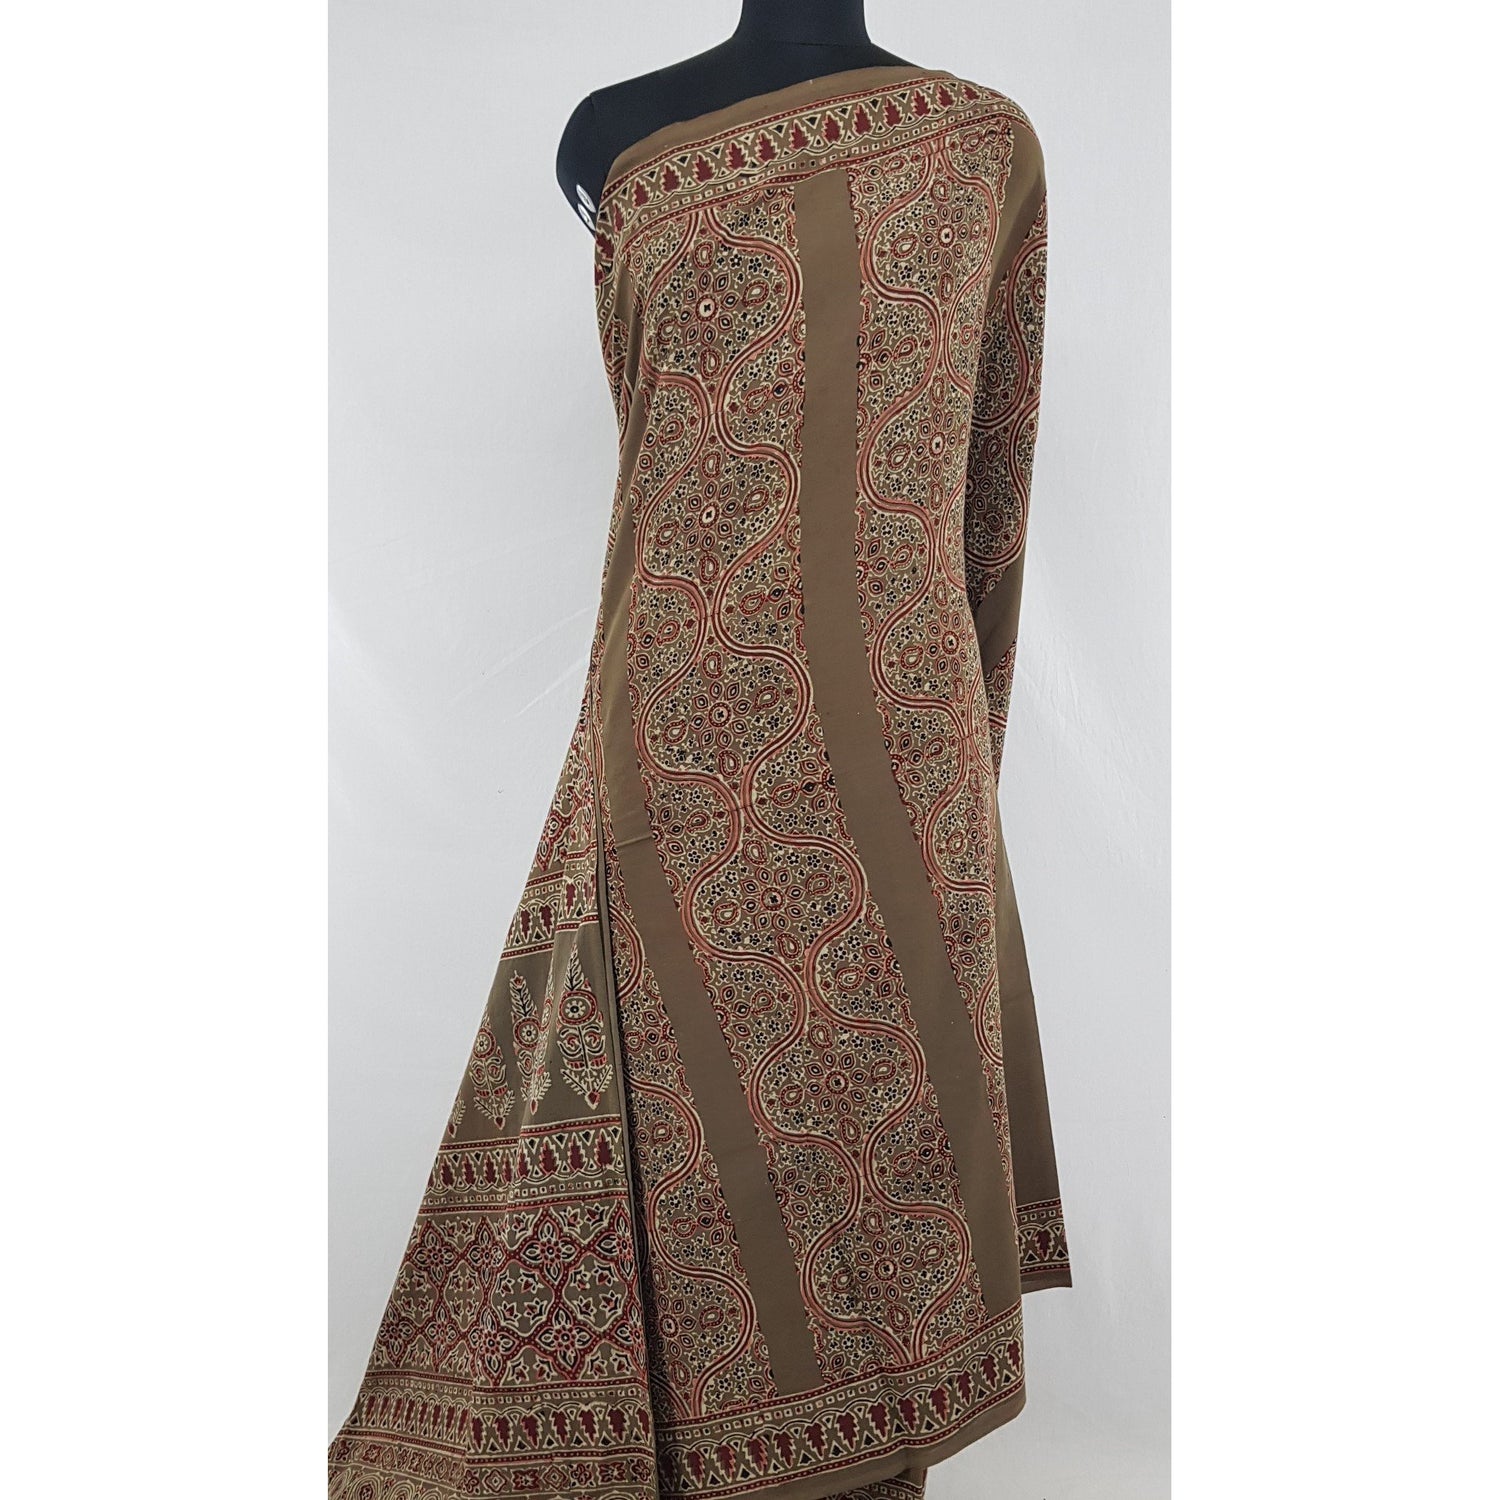 Ajrakh hand block printed natural dyed Cotton saree - Vinshika